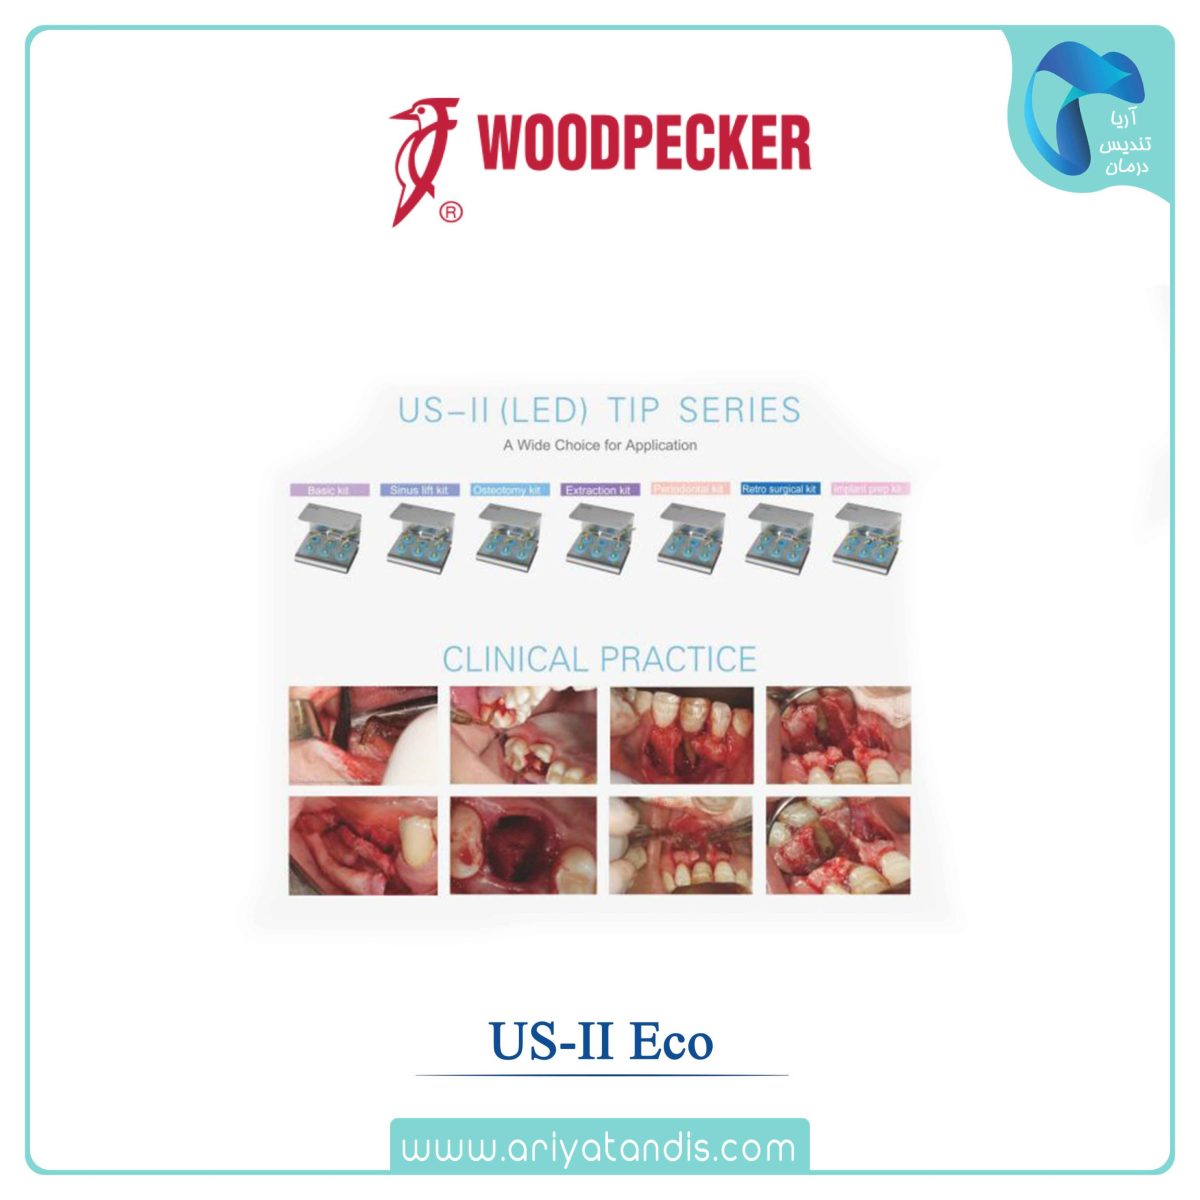 قیمت،پیزوسرجری وودپیکر Woodpecker – US-II